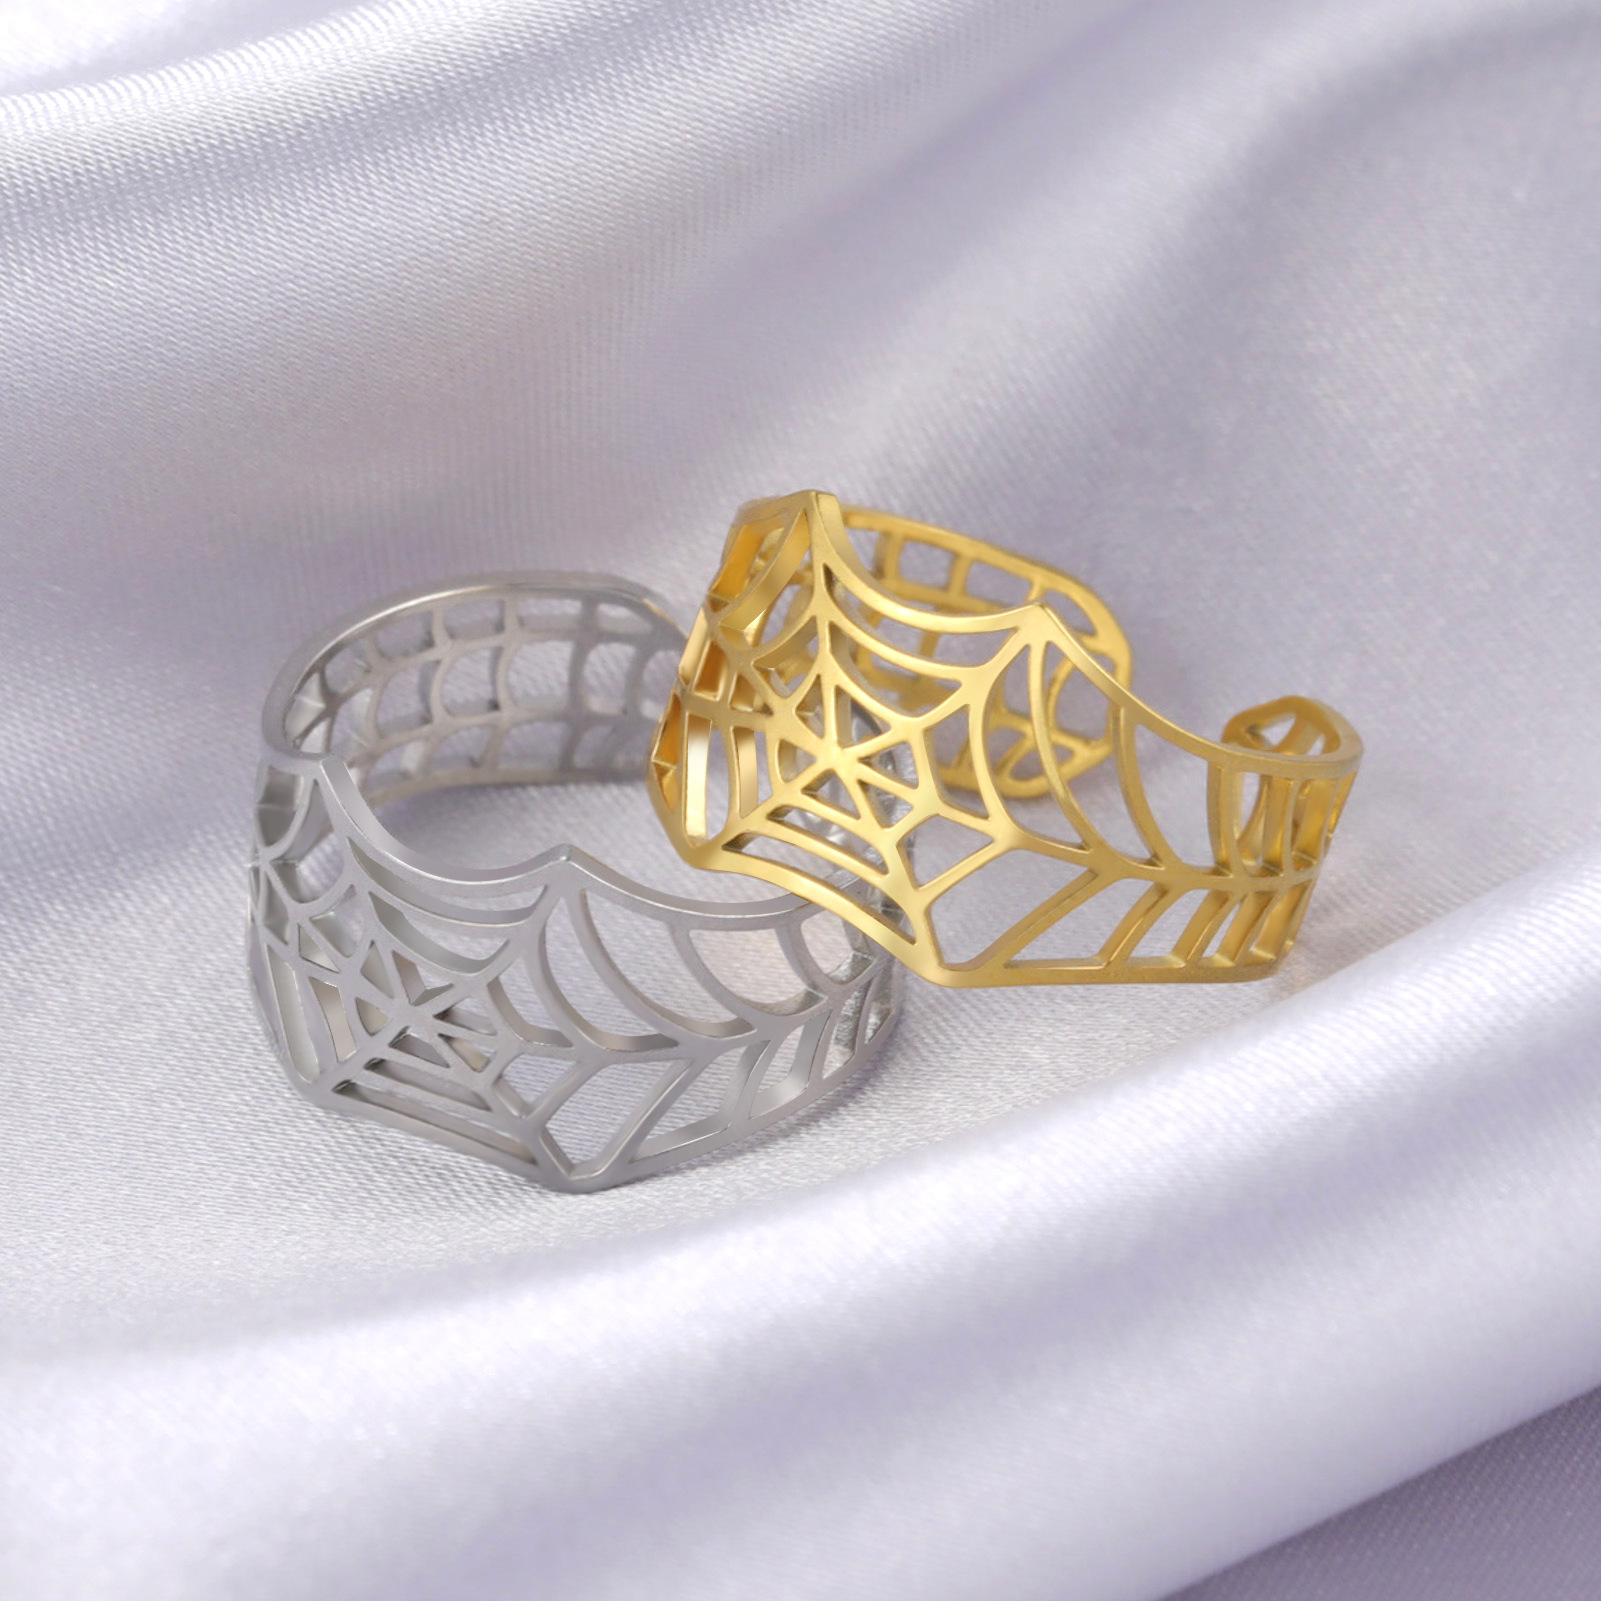 Регулируемая кольцо -кольцо -паук. Открывающееся паутиновое кольцо серебряного кольца серебряного цвета Стильный подарок ювелирных изделий с коробкой оптом и поддержание капель